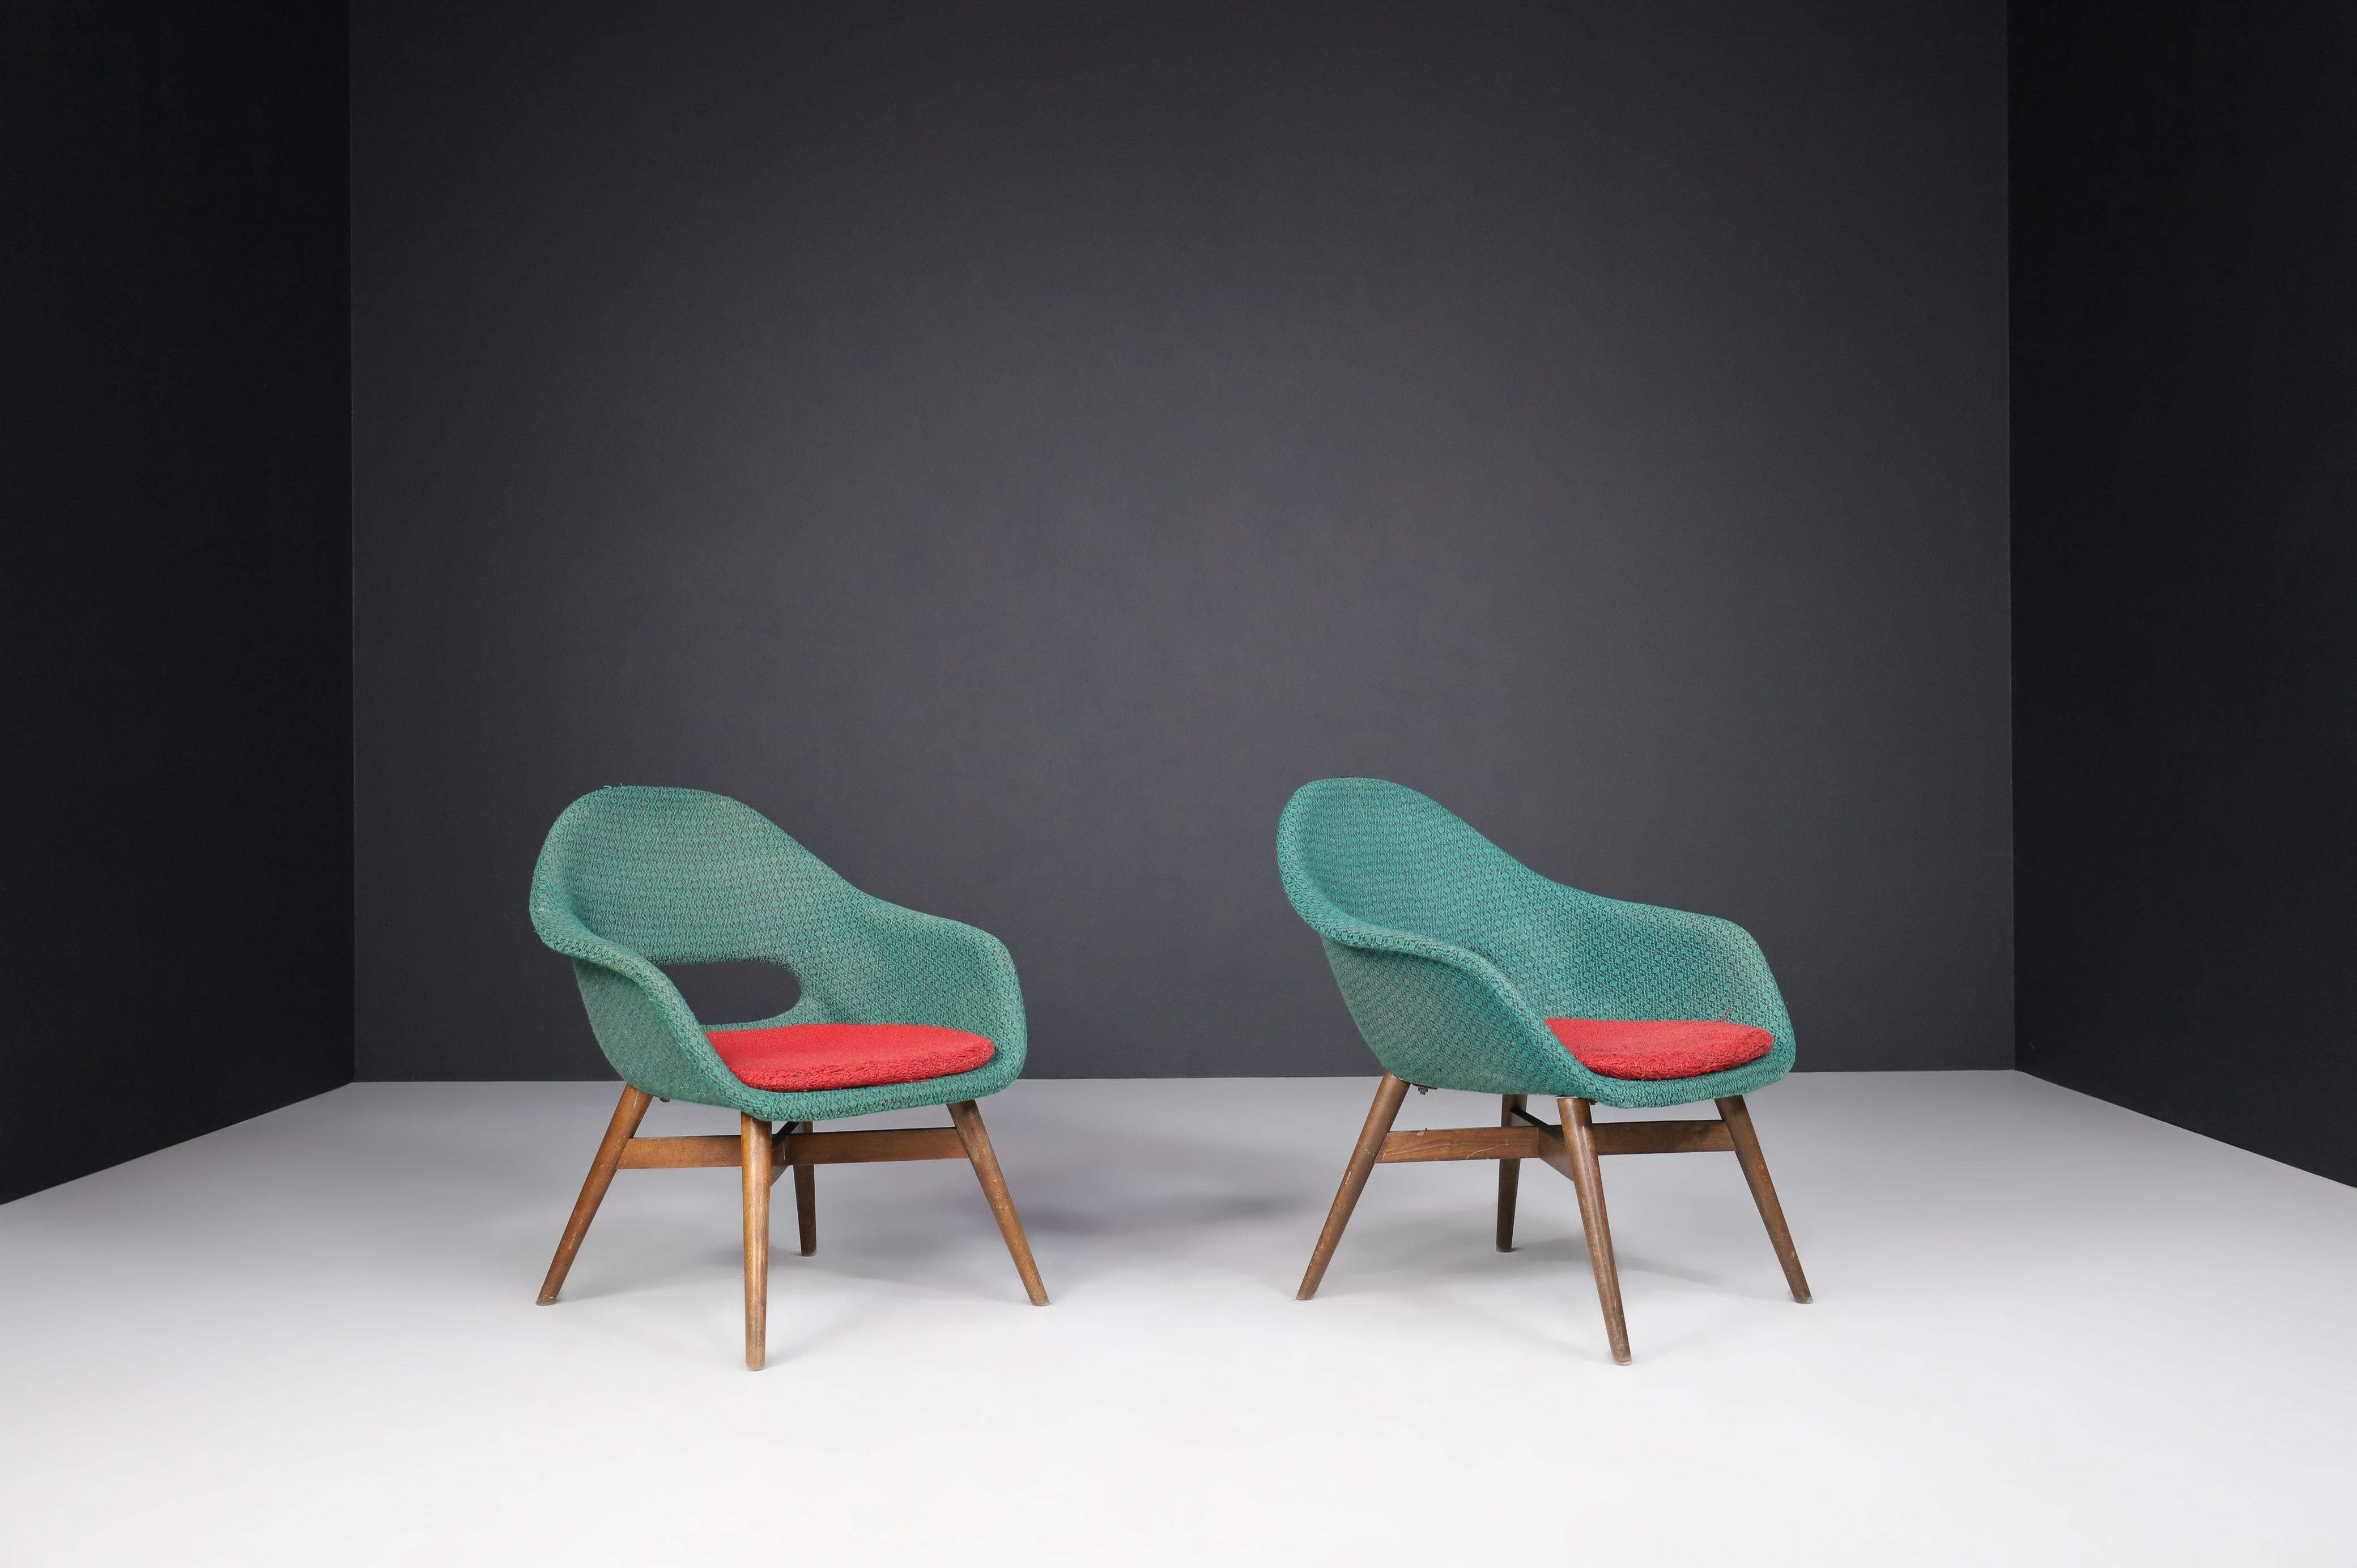 Fauteuils Miroslav Navratil en tissu d'origine 1960.

Charmant ensemble de deux fauteuils de Miroslav Navratil, fabriqués en République tchèque par Cesky Nabytek vers 1960. Ces chaises ont une base en contreplaqué de hêtre brun et une coque en